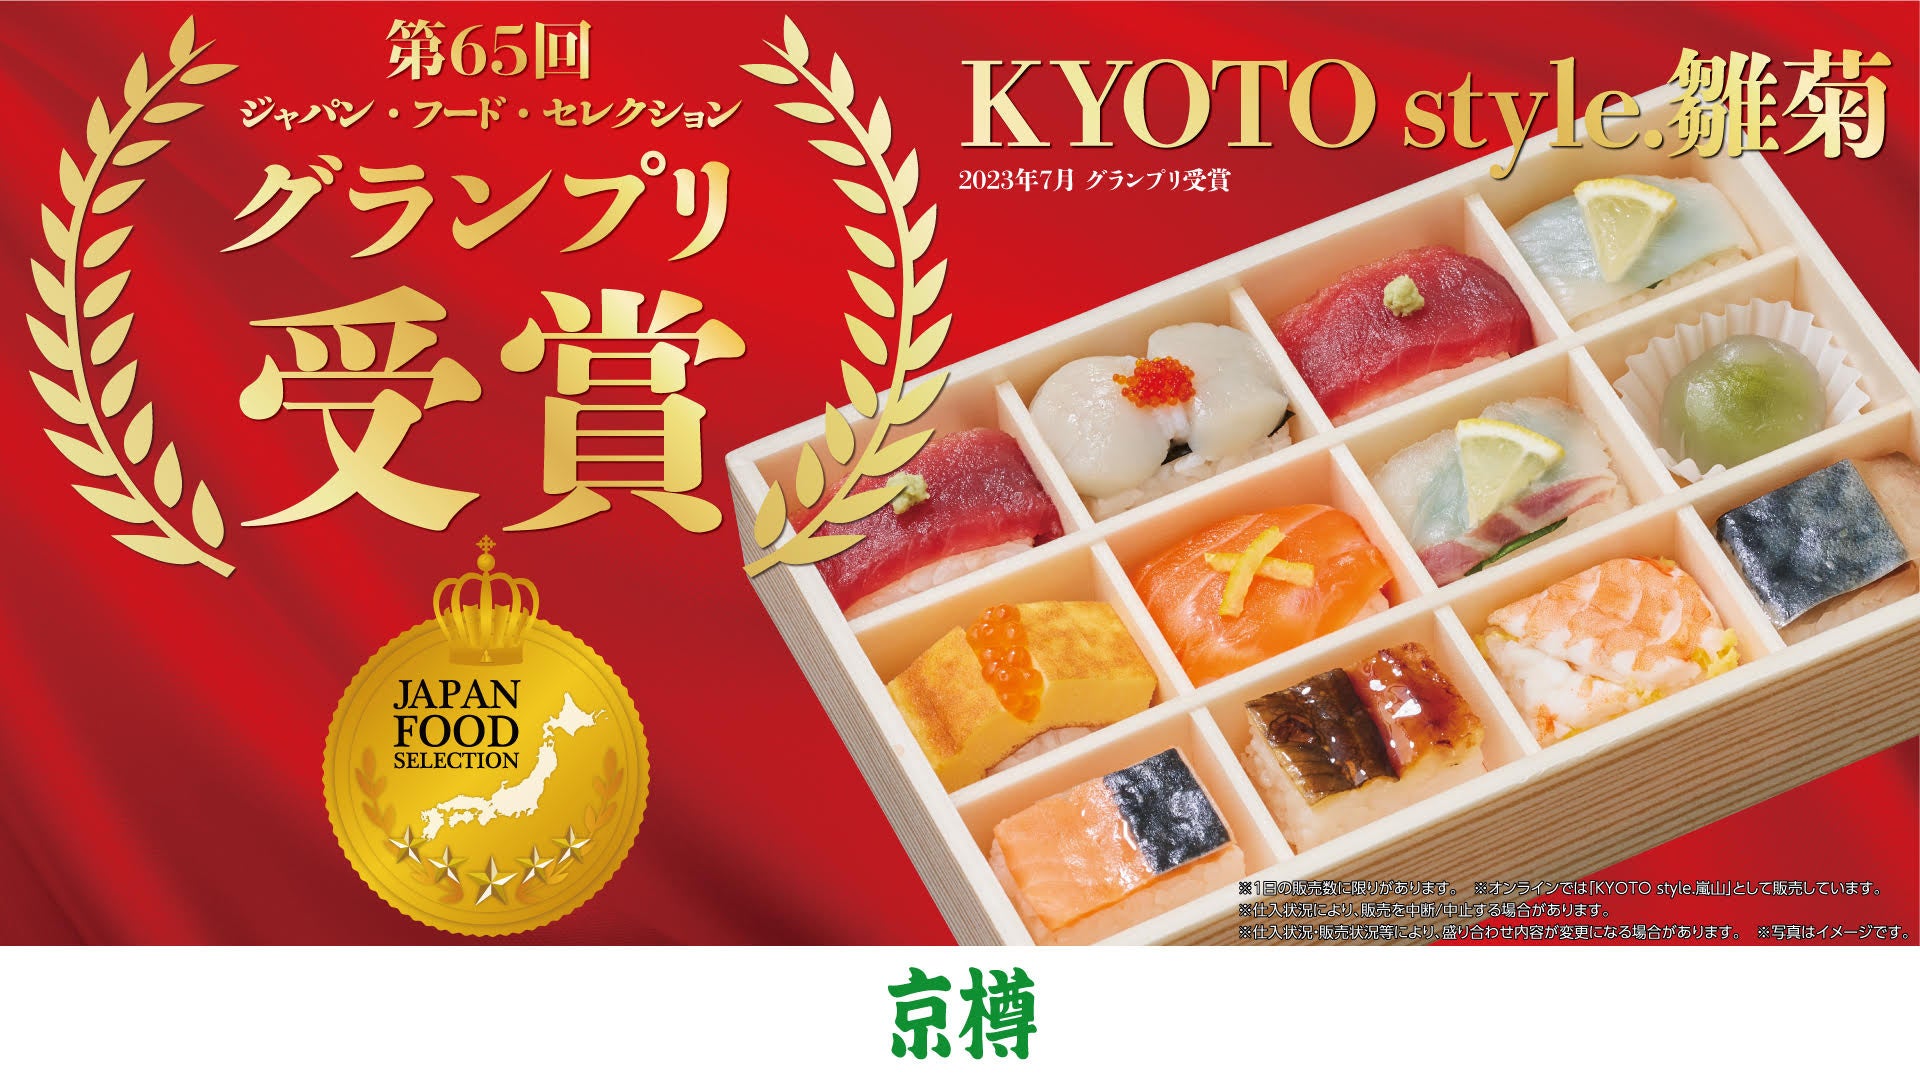 お持ち帰り鮨専門店「京樽」の「KYOTO style. 雛菊」、第65回「ジャパン・フード・セレクション」の最高賞のグランプリを受賞！